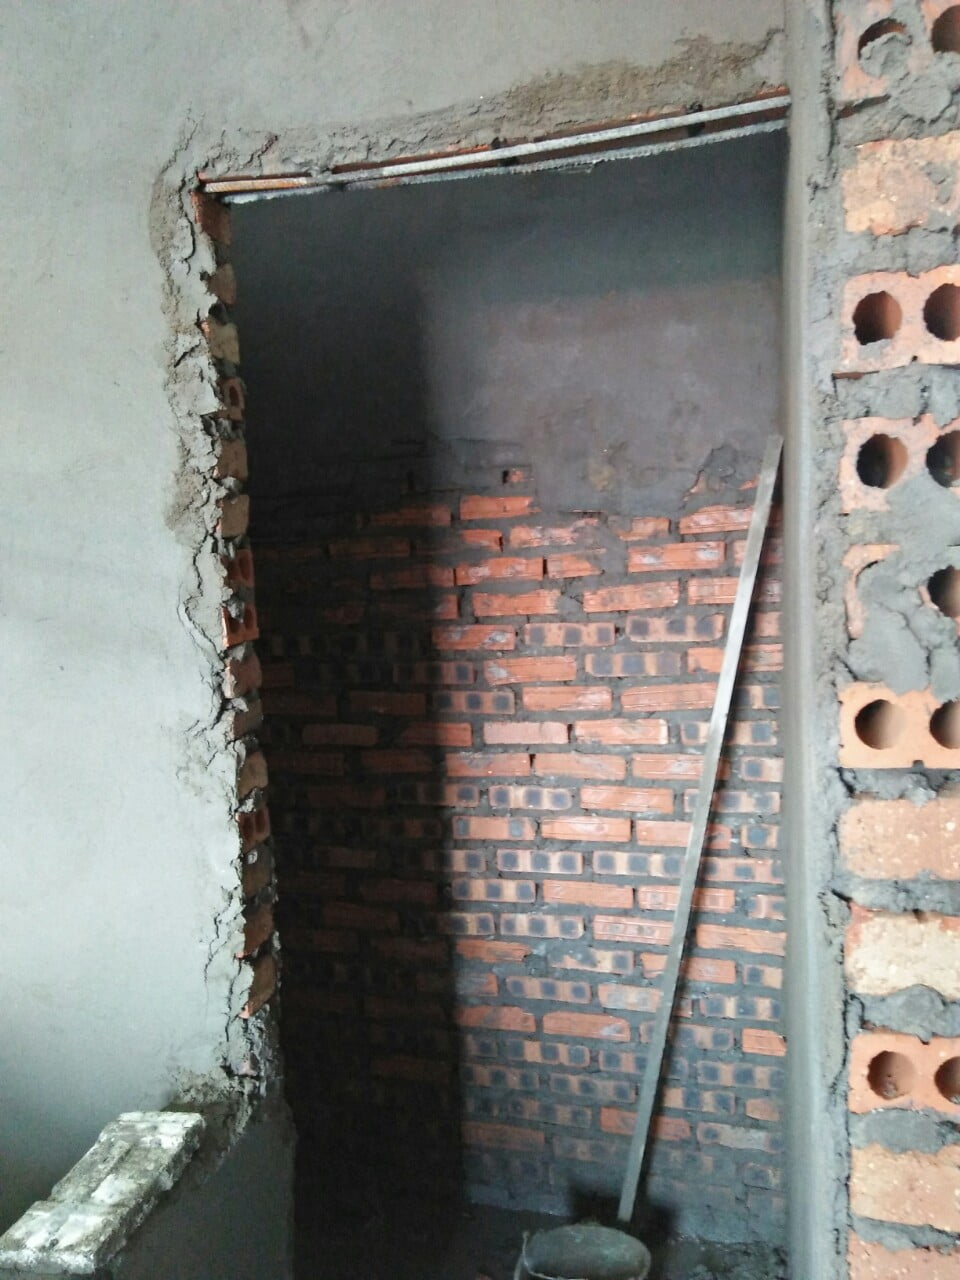 Cải tạo nhà vệ sinh trọn gói uy tín tại Hà Nội - 2H Home